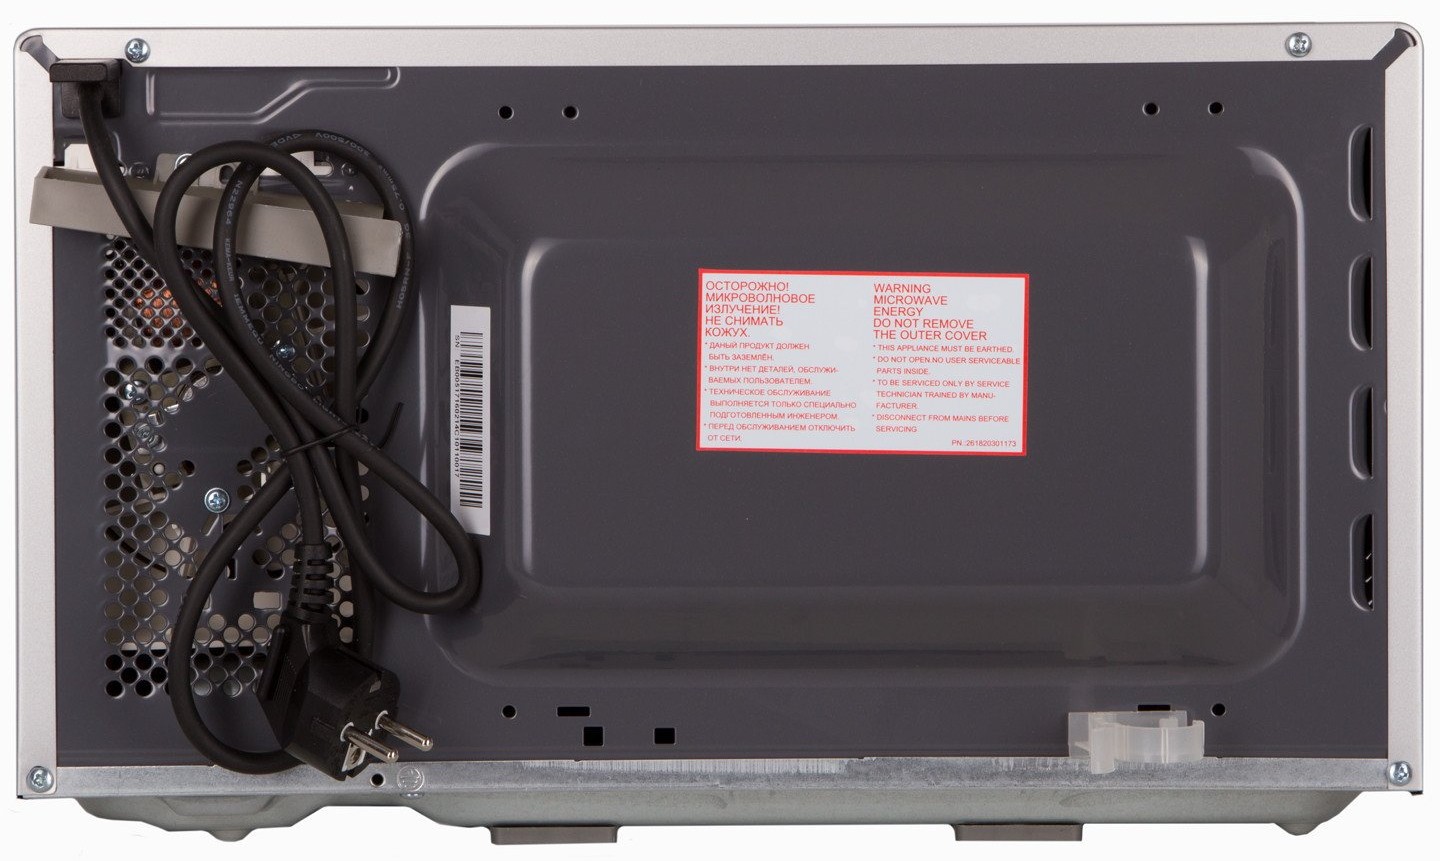 Микроволновая печь Panasonic NN-GT264MZPE отзывы - изображения 5